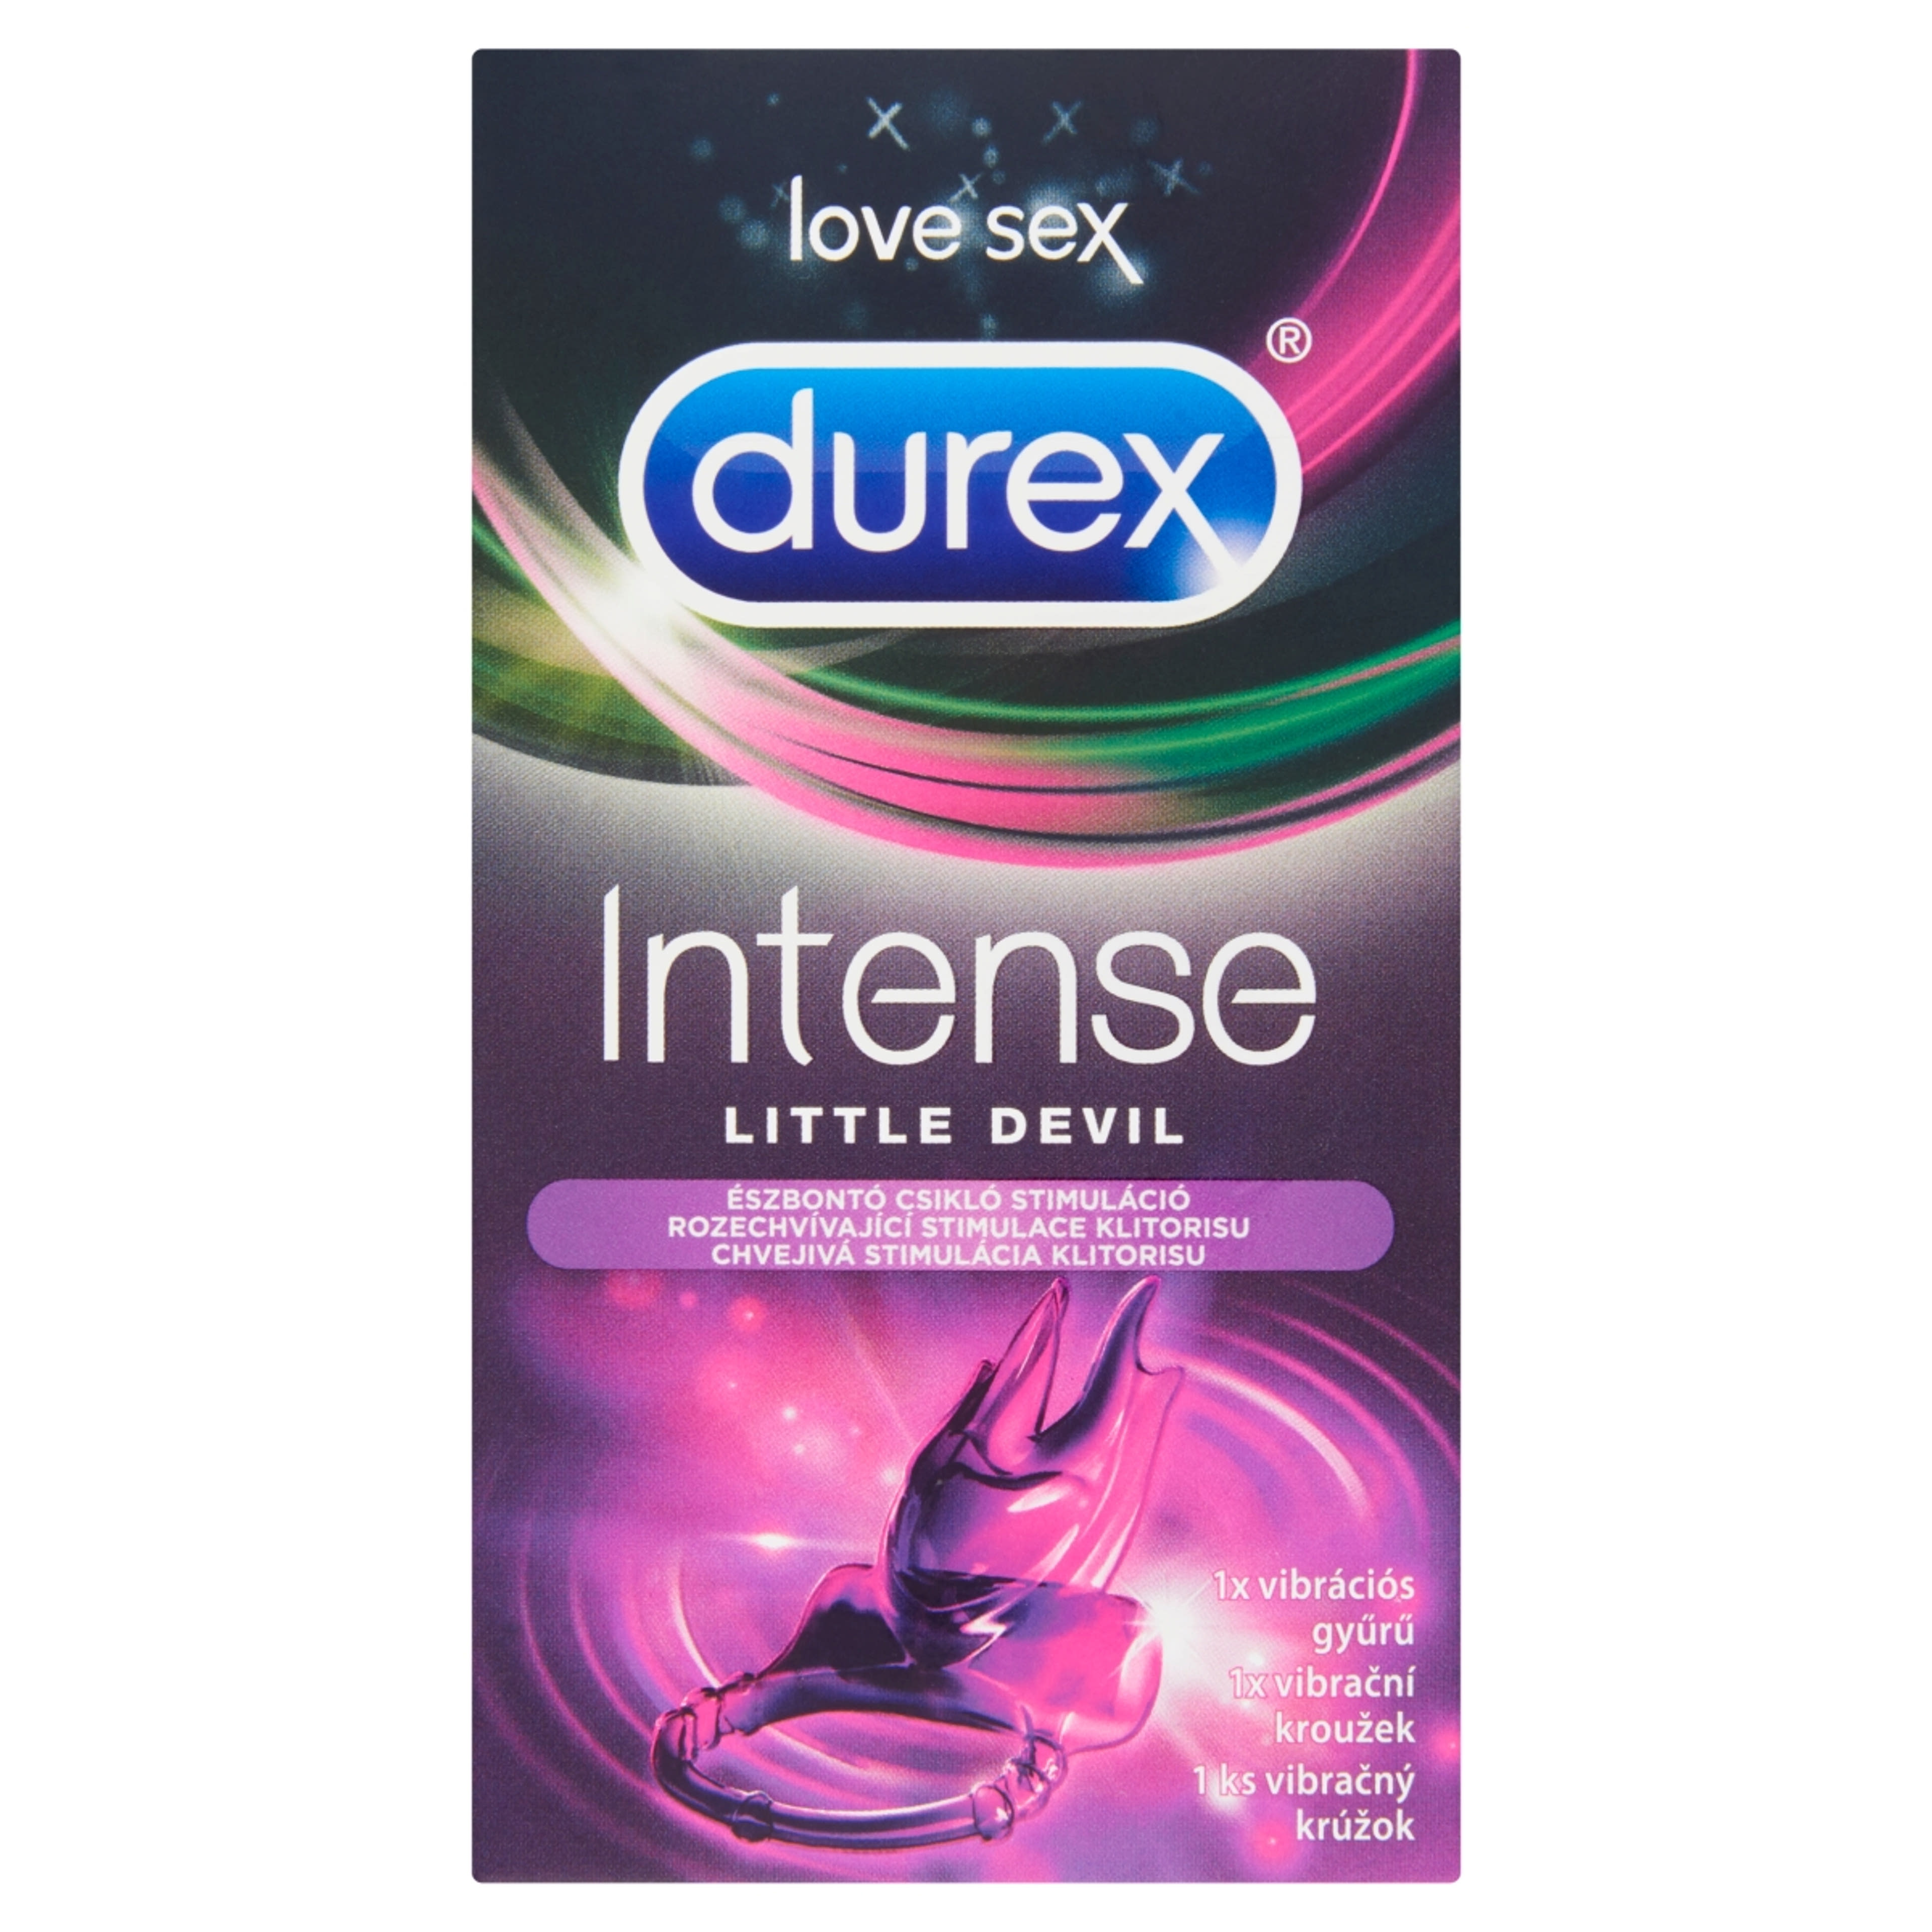 Durex Intense vibrációs gyűrű - 1 db